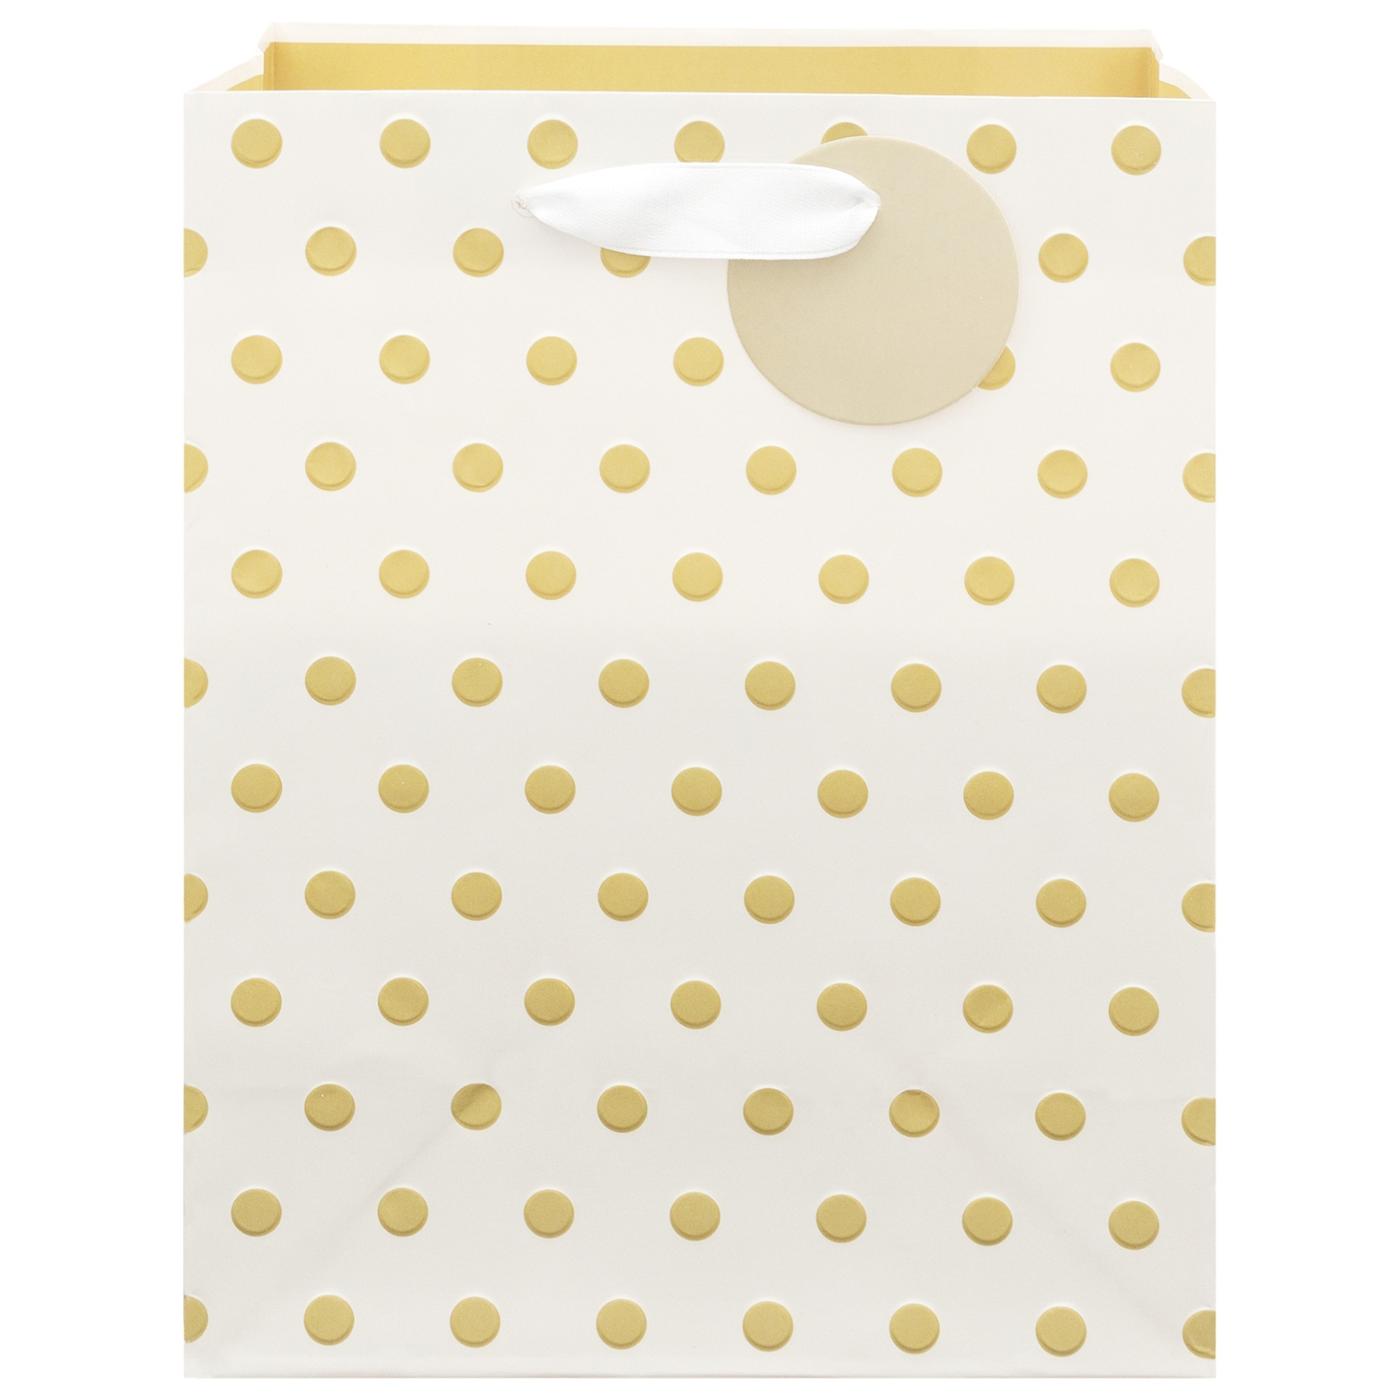 IG Design Gold Dots Paper Gift Bag; image 1 of 2